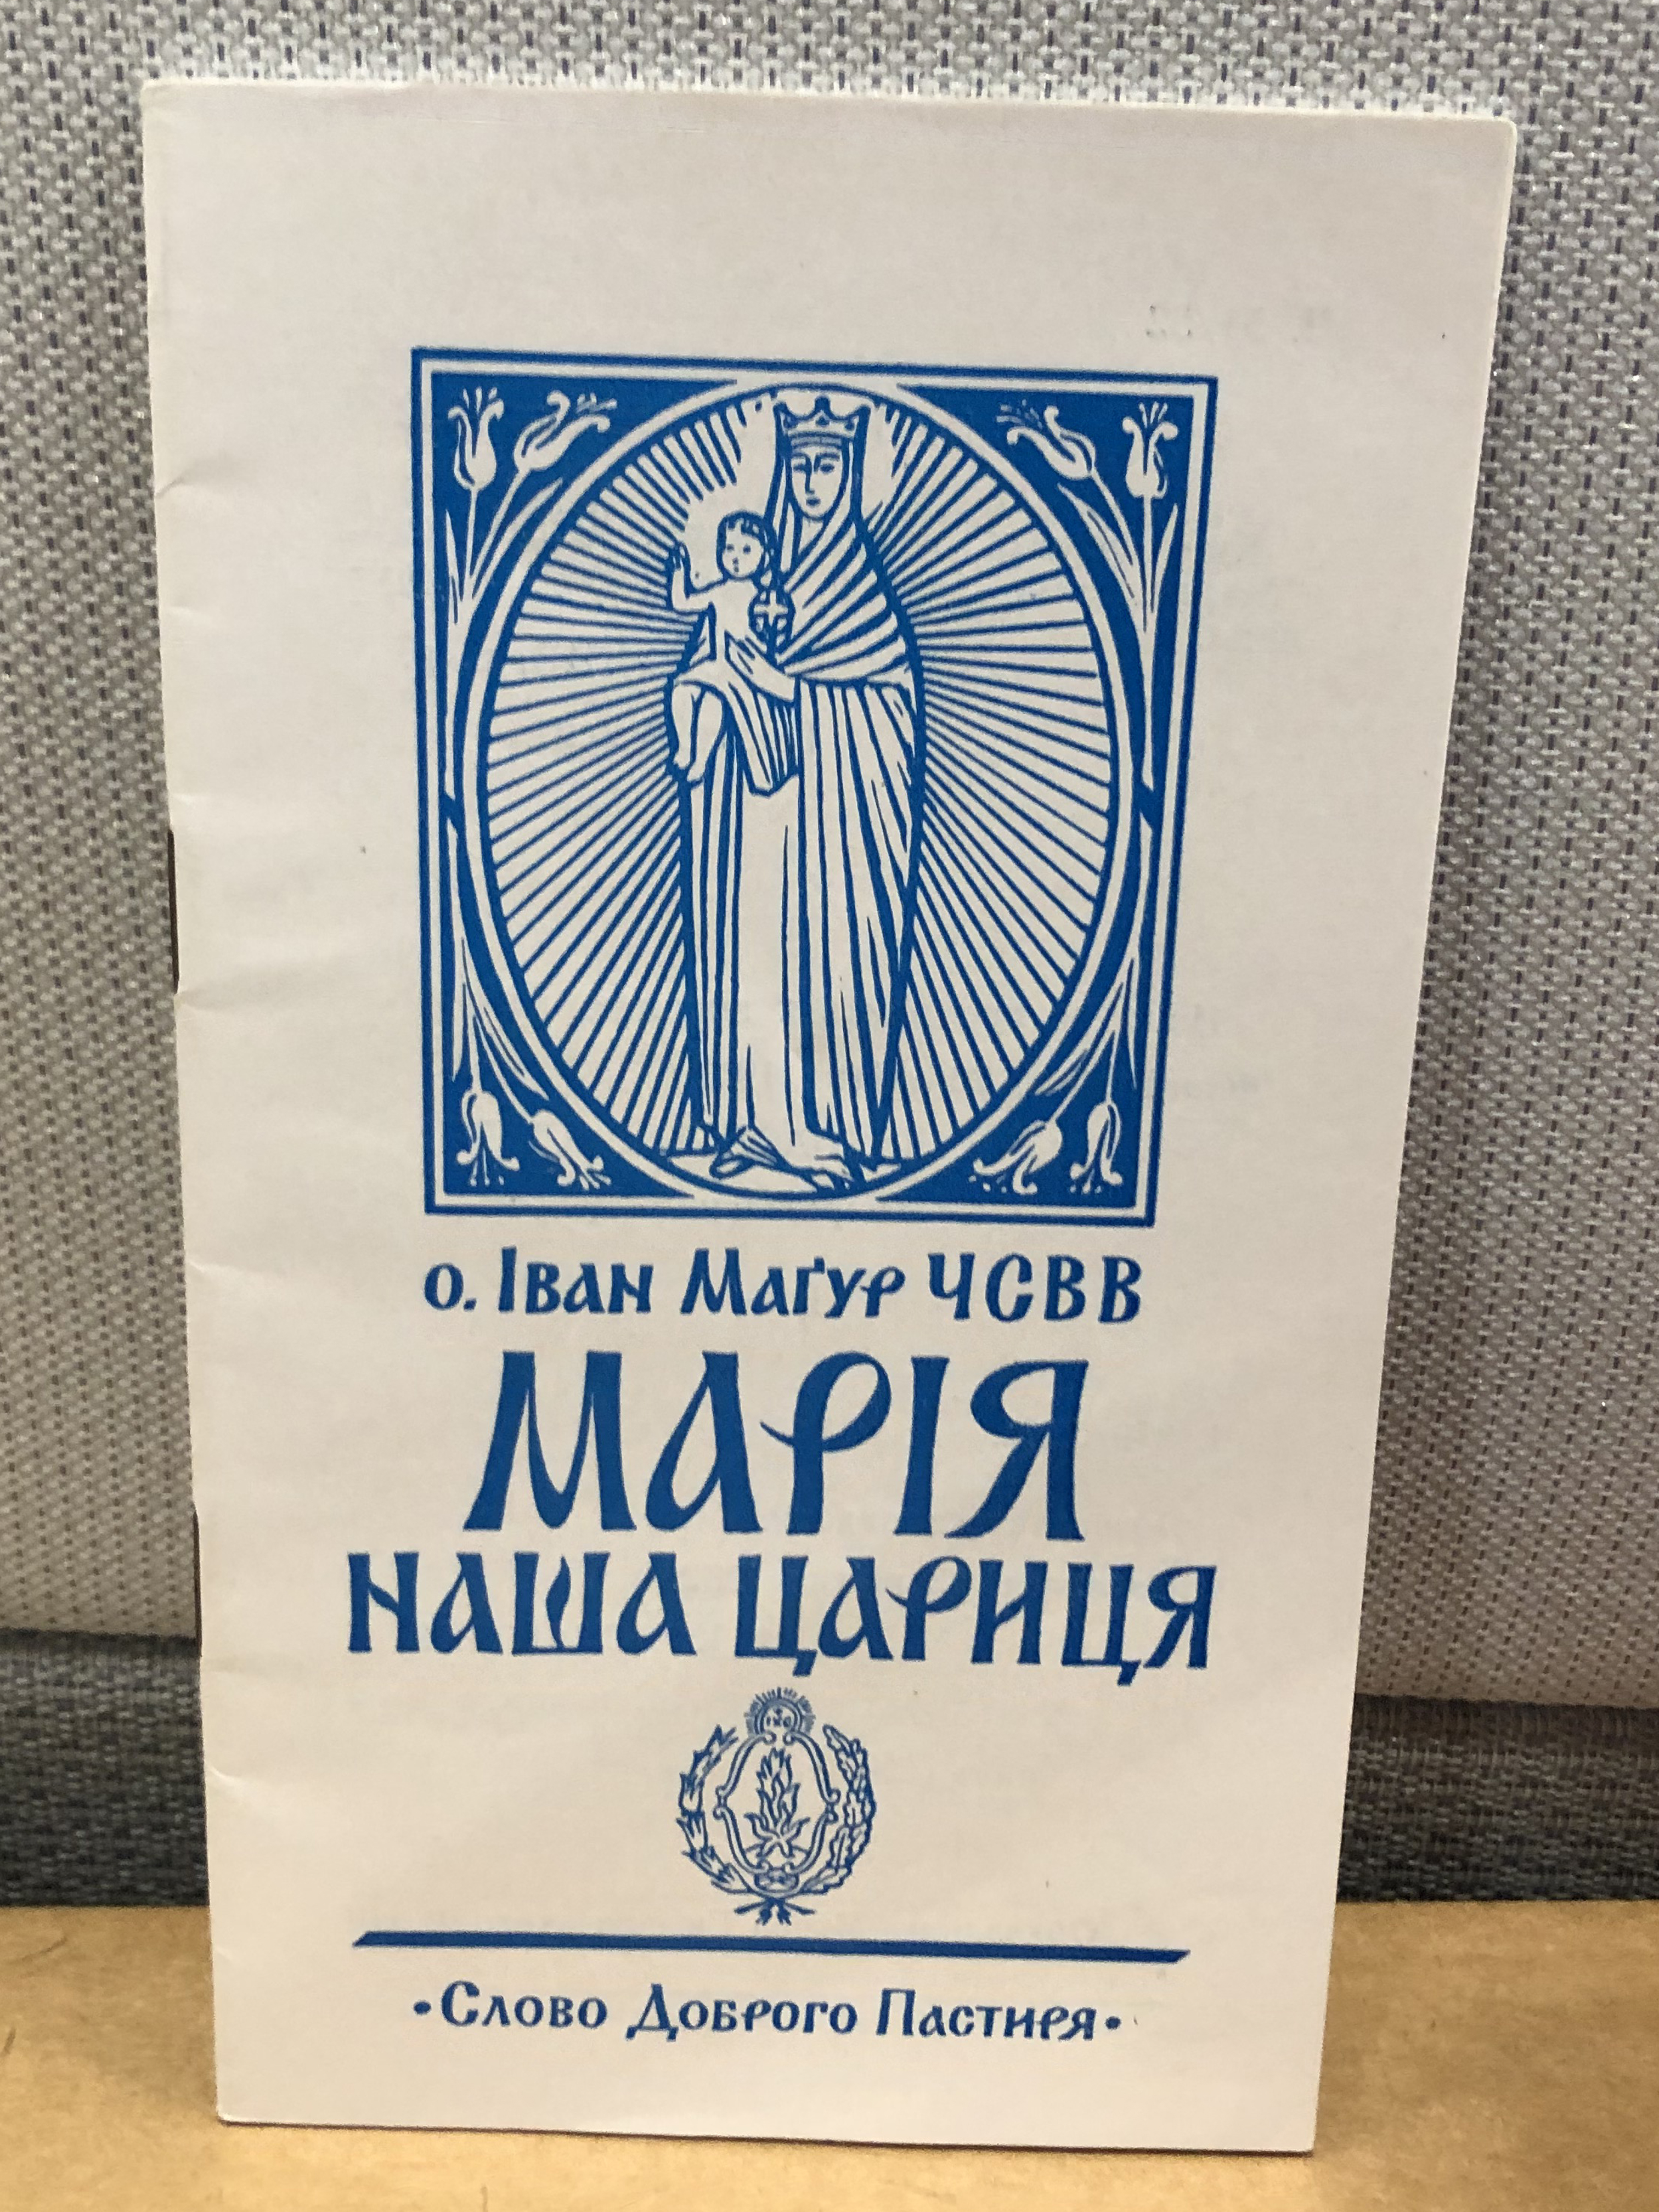 Ukrainian language pamphlet